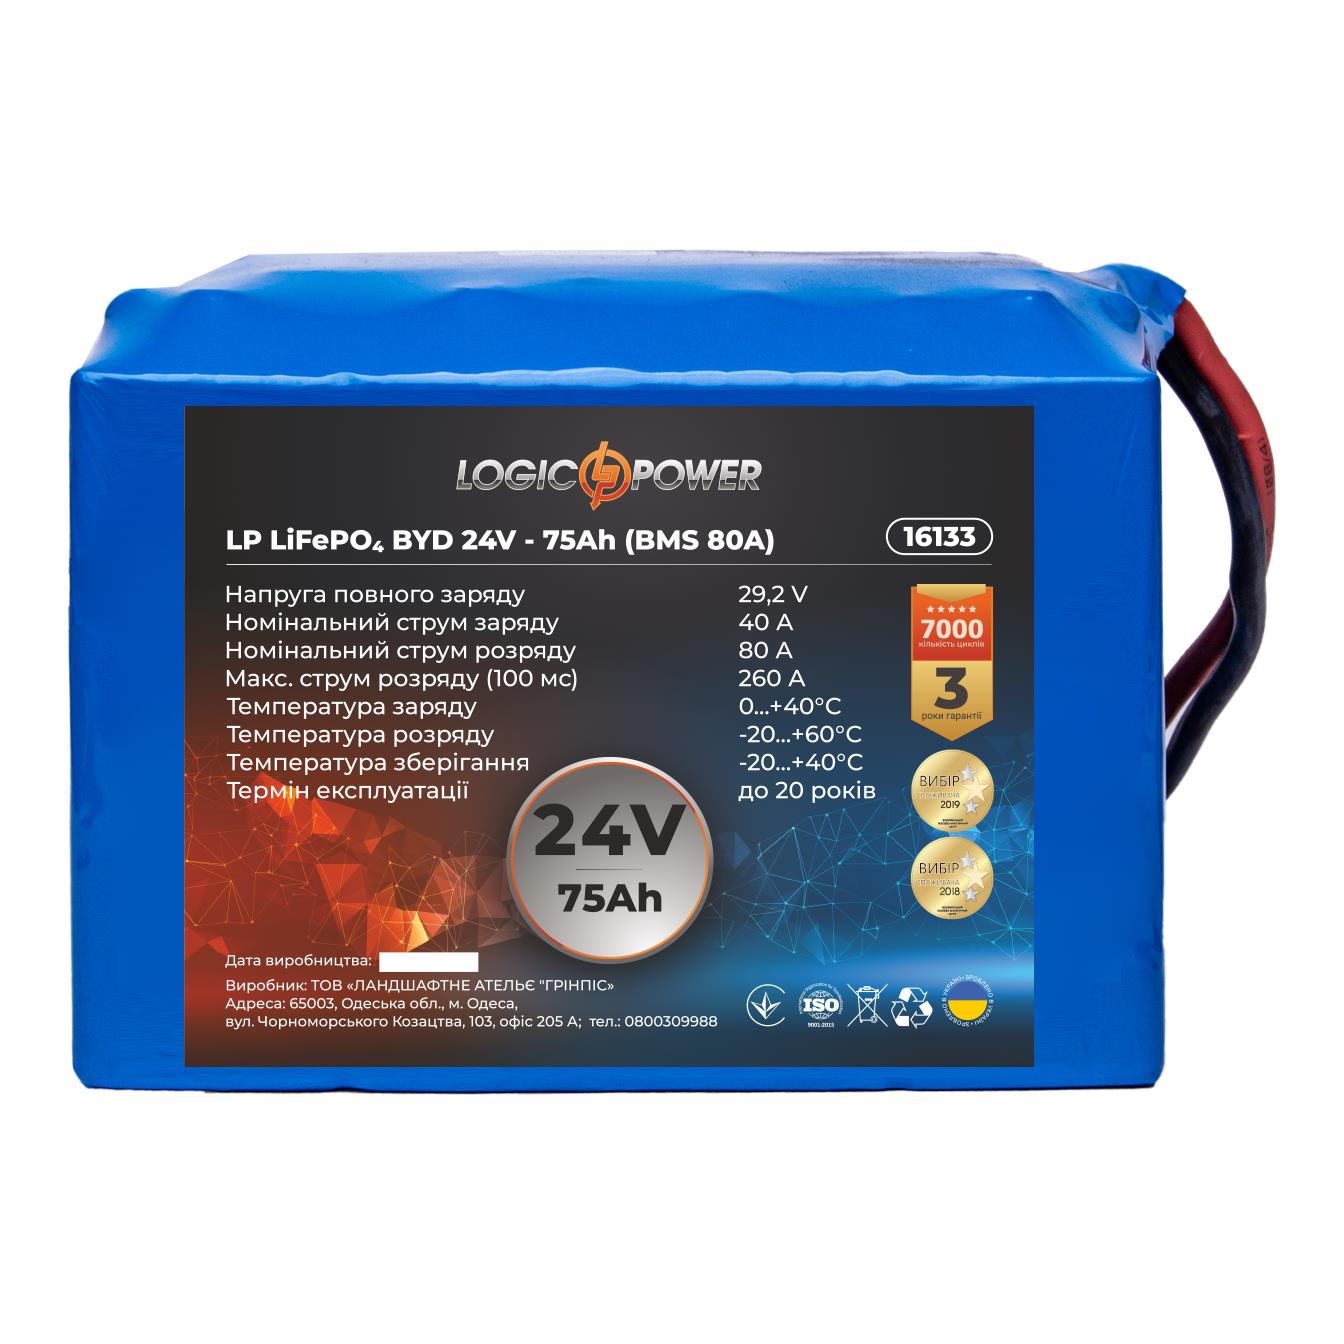 Аккумулятор литий-железо-фосфатный LogicPower LP LiFePO4 BYD 24V - 75 Ah (BMS 80A) (16133) в интернет-магазине, главное фото